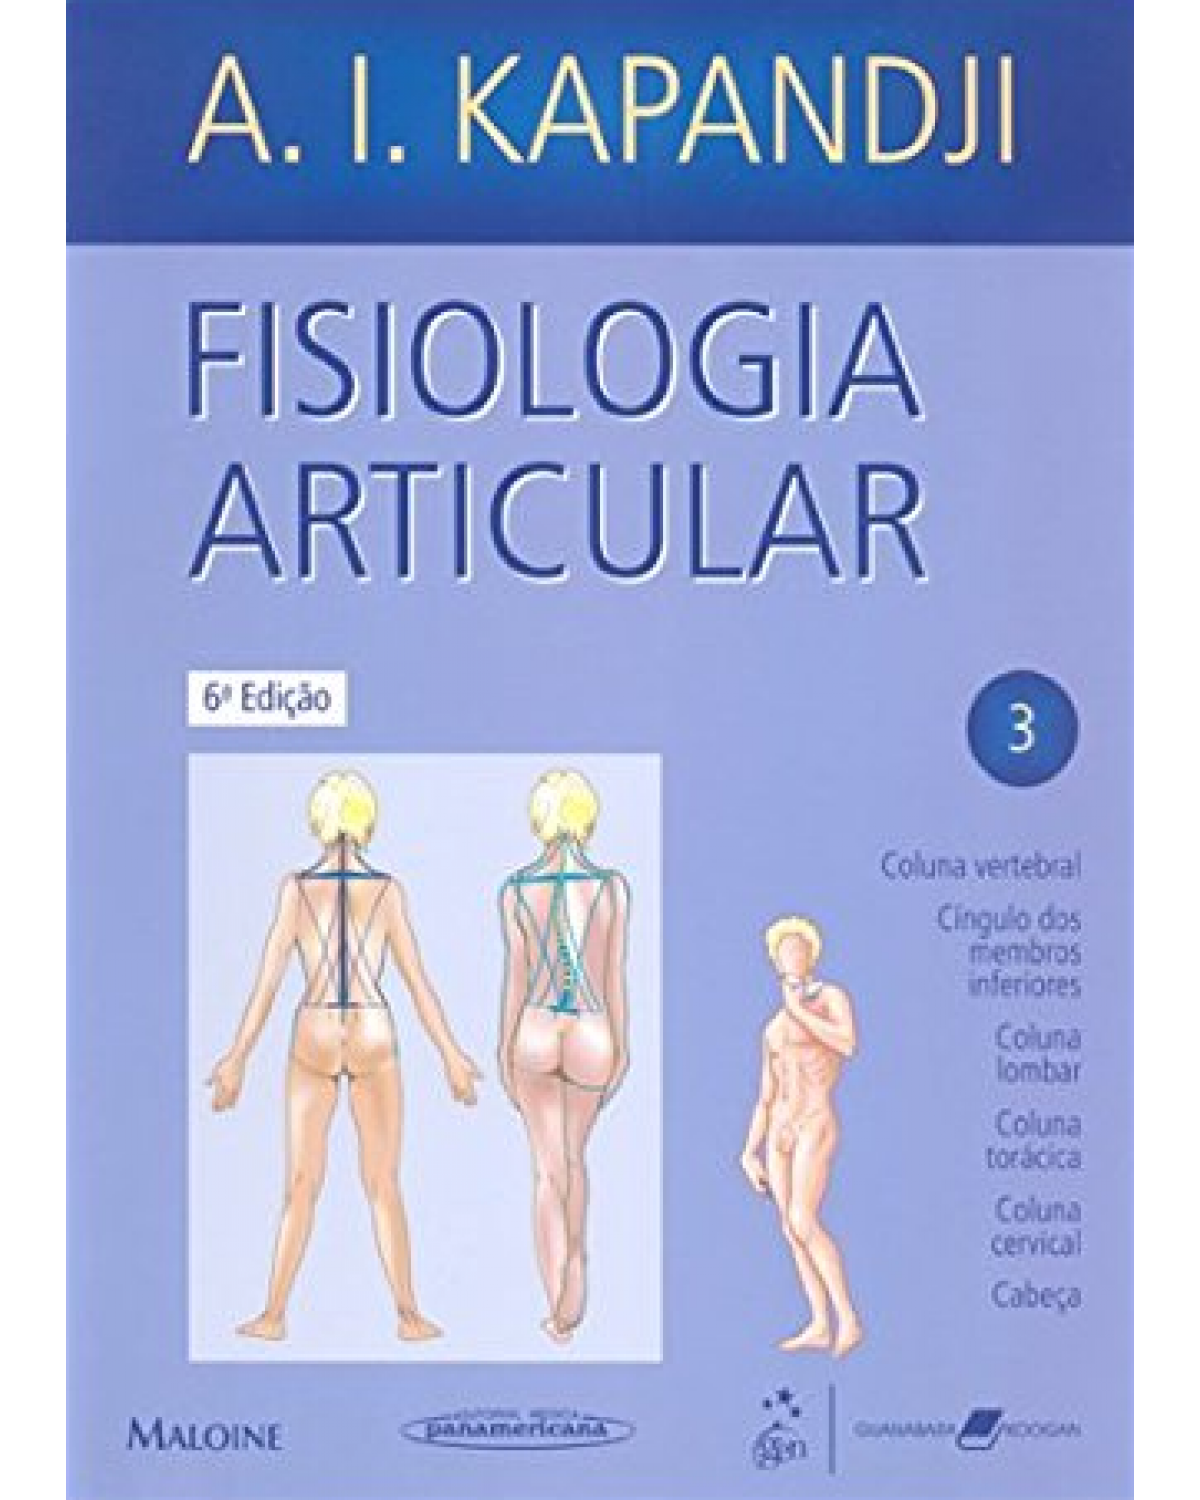 Fisiologia articular - Volume 3:  - 6ª Edição | 2009